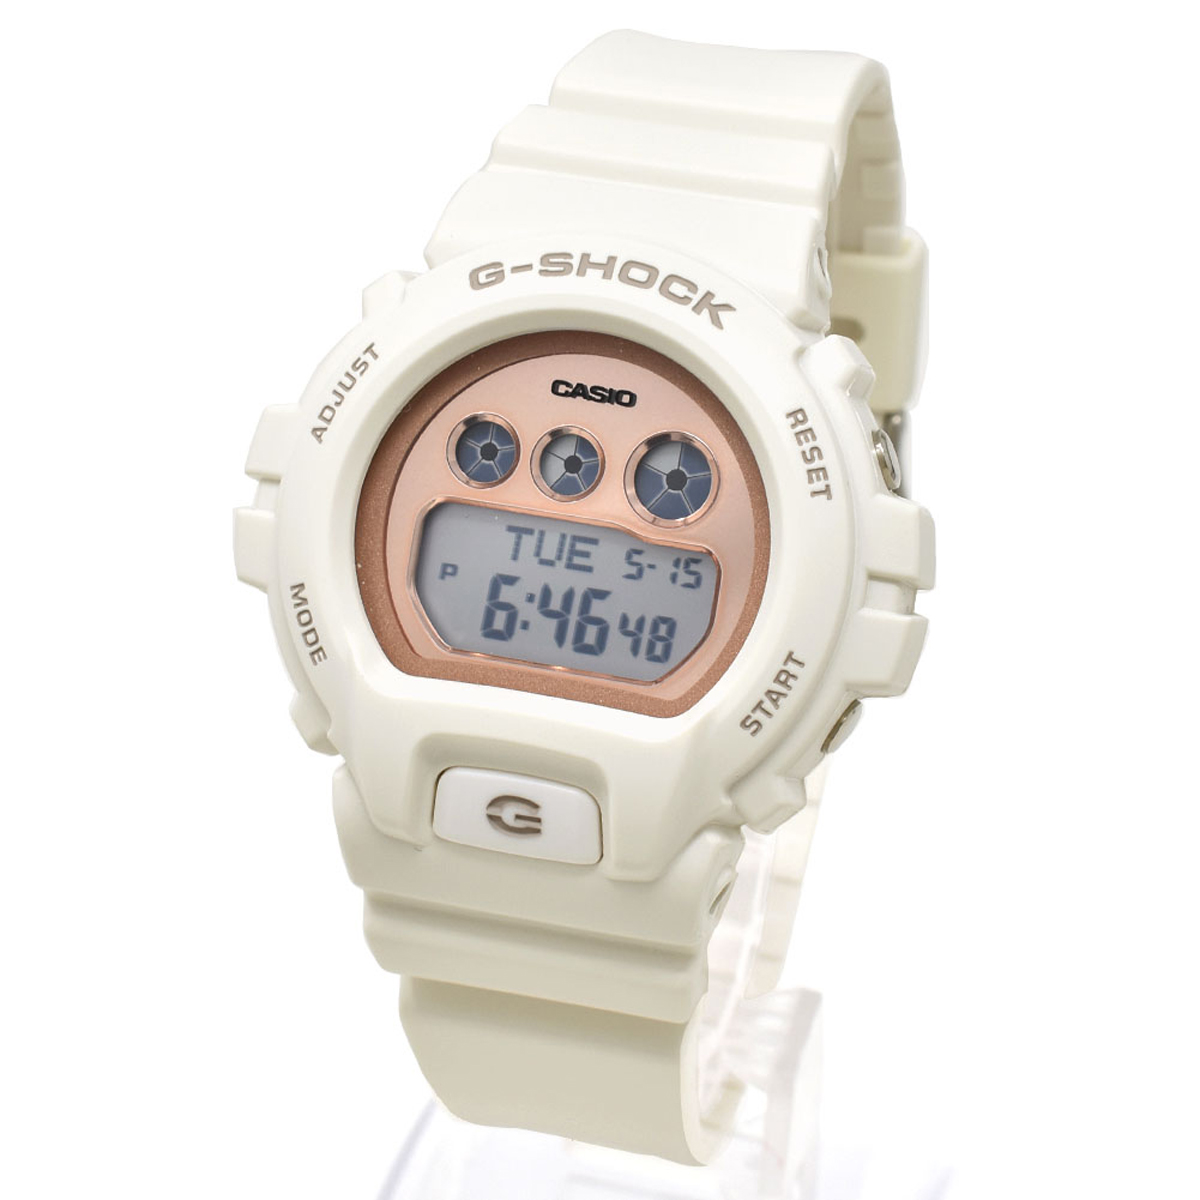 カシオ CASIO 腕時計 G-SHOCK Gショック GMD-S6900MC-7ER デジタル時計 メンズ レディース 男女兼用 ウォッチ オフホワイト 海外正規品腕